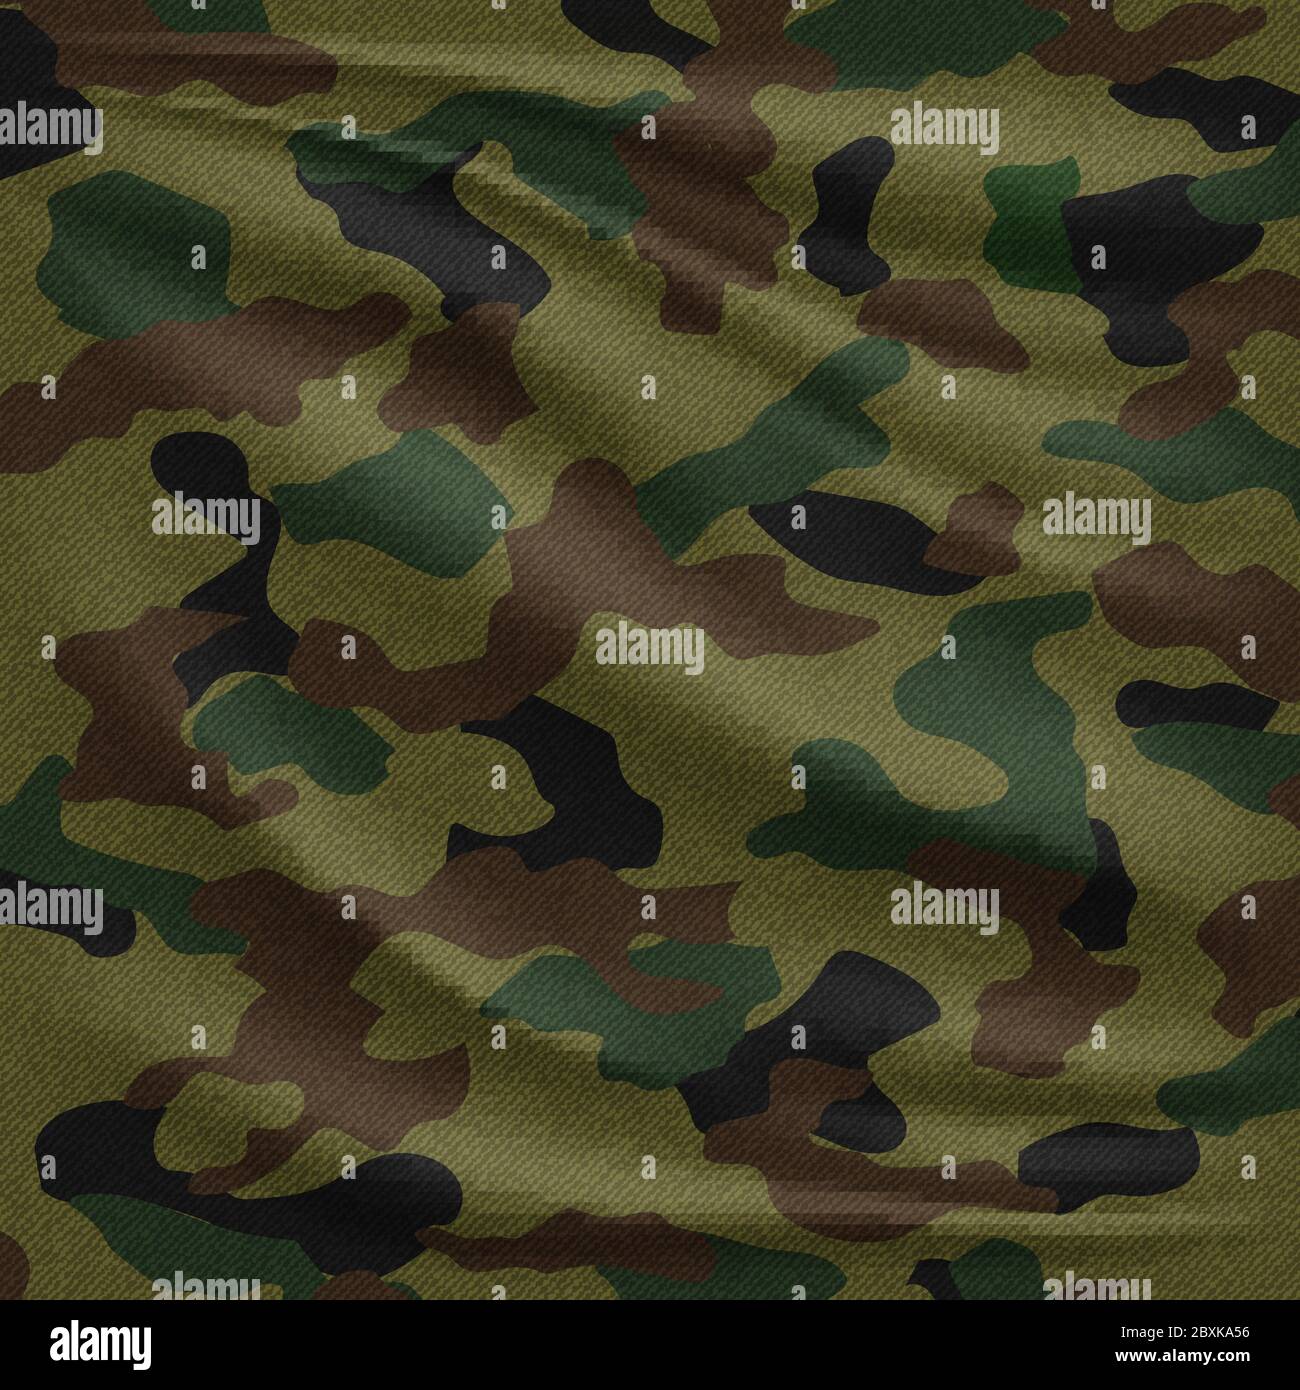 Fondo de textura de tela de camuflaje militar del ejército